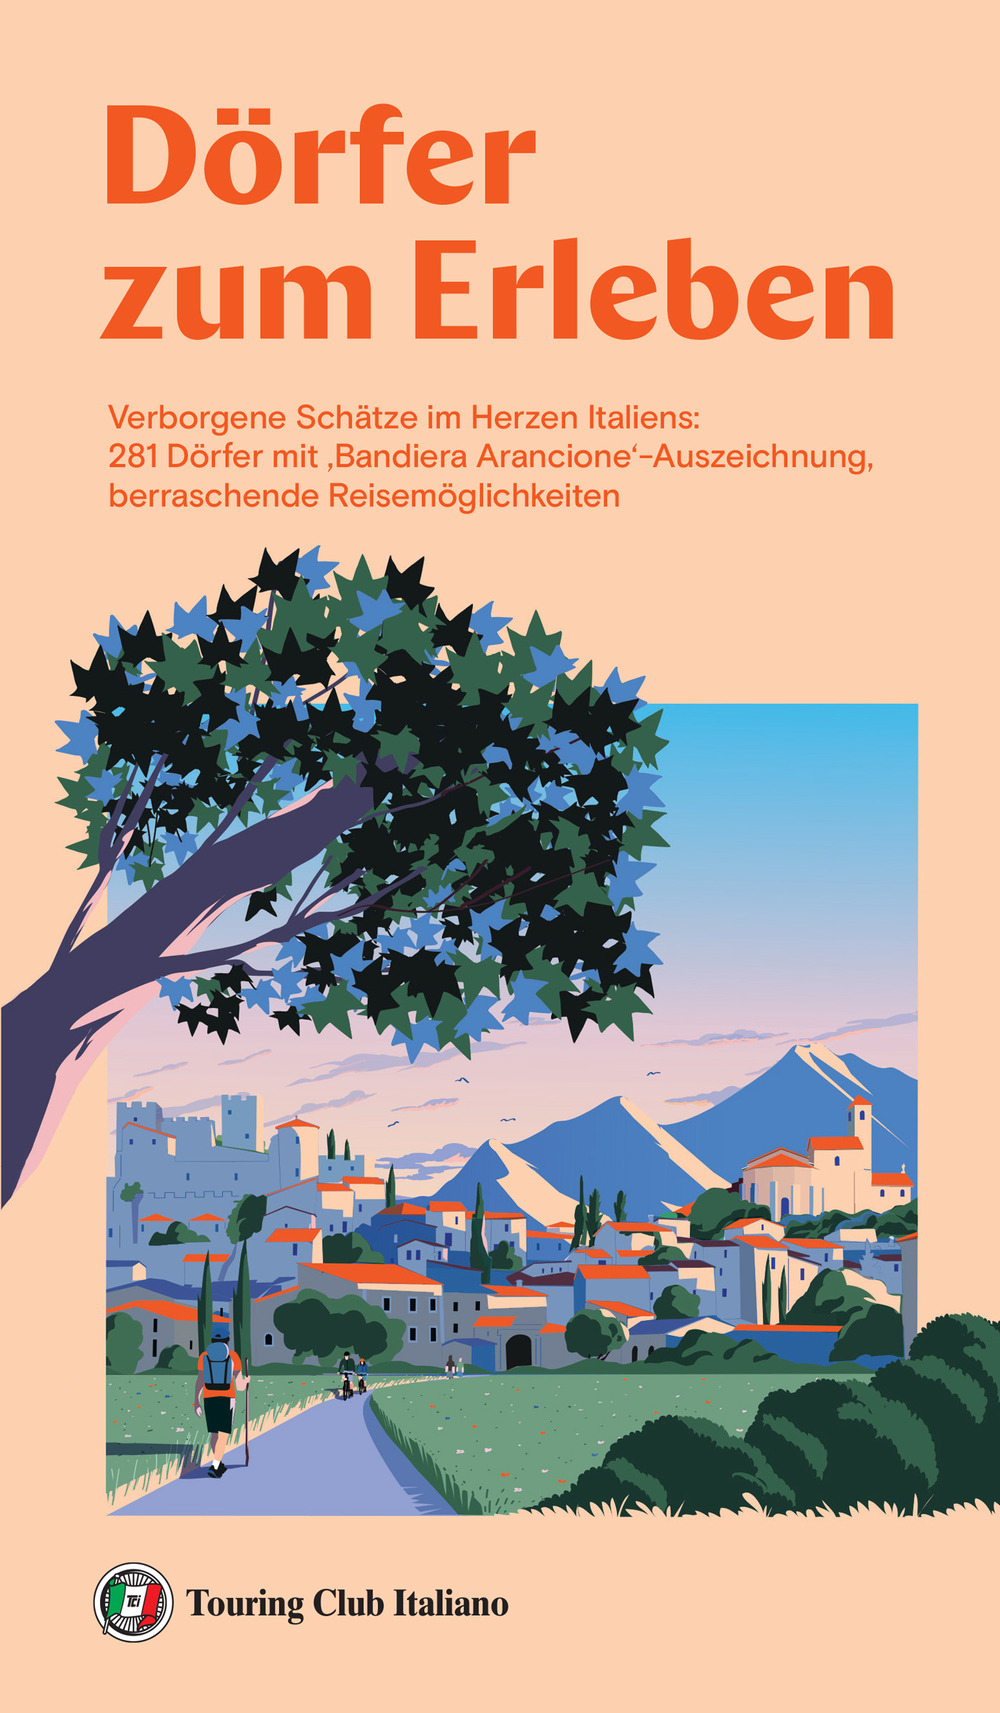 Dörfer zum erleben. Verborgene Schätze im Herzen Italiens: 281 Dörfer mit 'Bandiera Arancione'-Auszeichnung, berraschende Reisemöglichkeiten